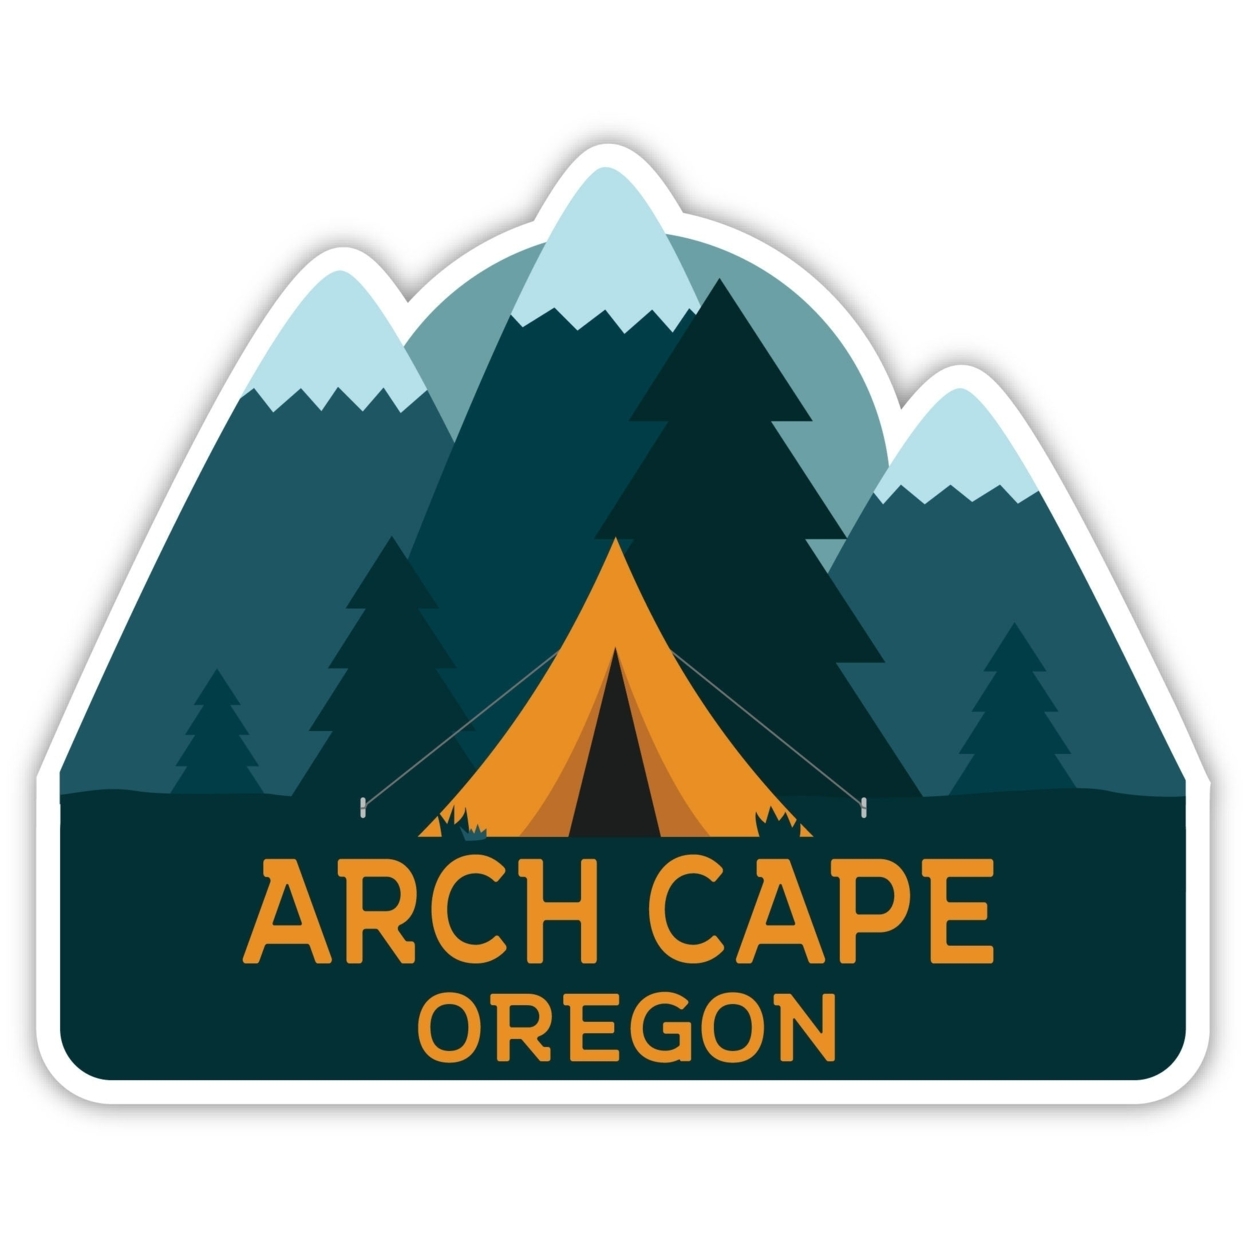 Arch Cape Oregon Souvenir Decorative Stickers (Choose Theme And Size) - Single Unit, 8-Inch, Tent